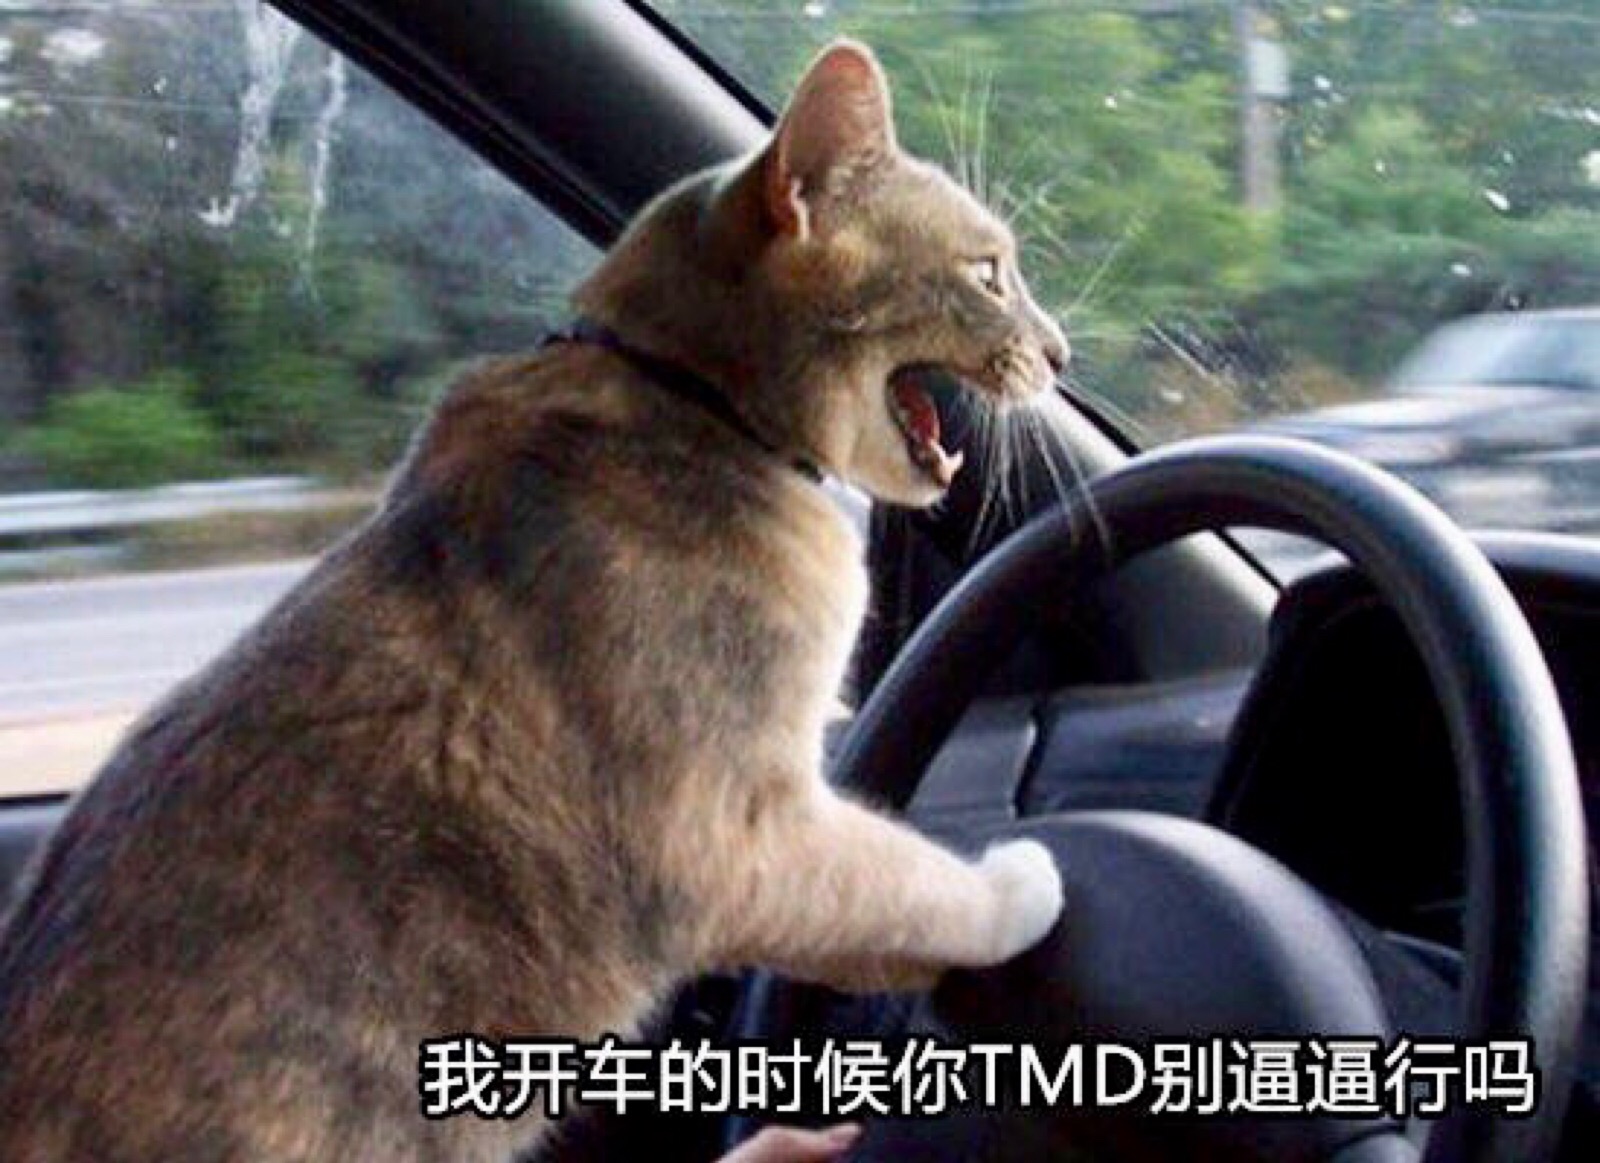 猫咪表情包 "我开车的时候你tmd别逼逼"